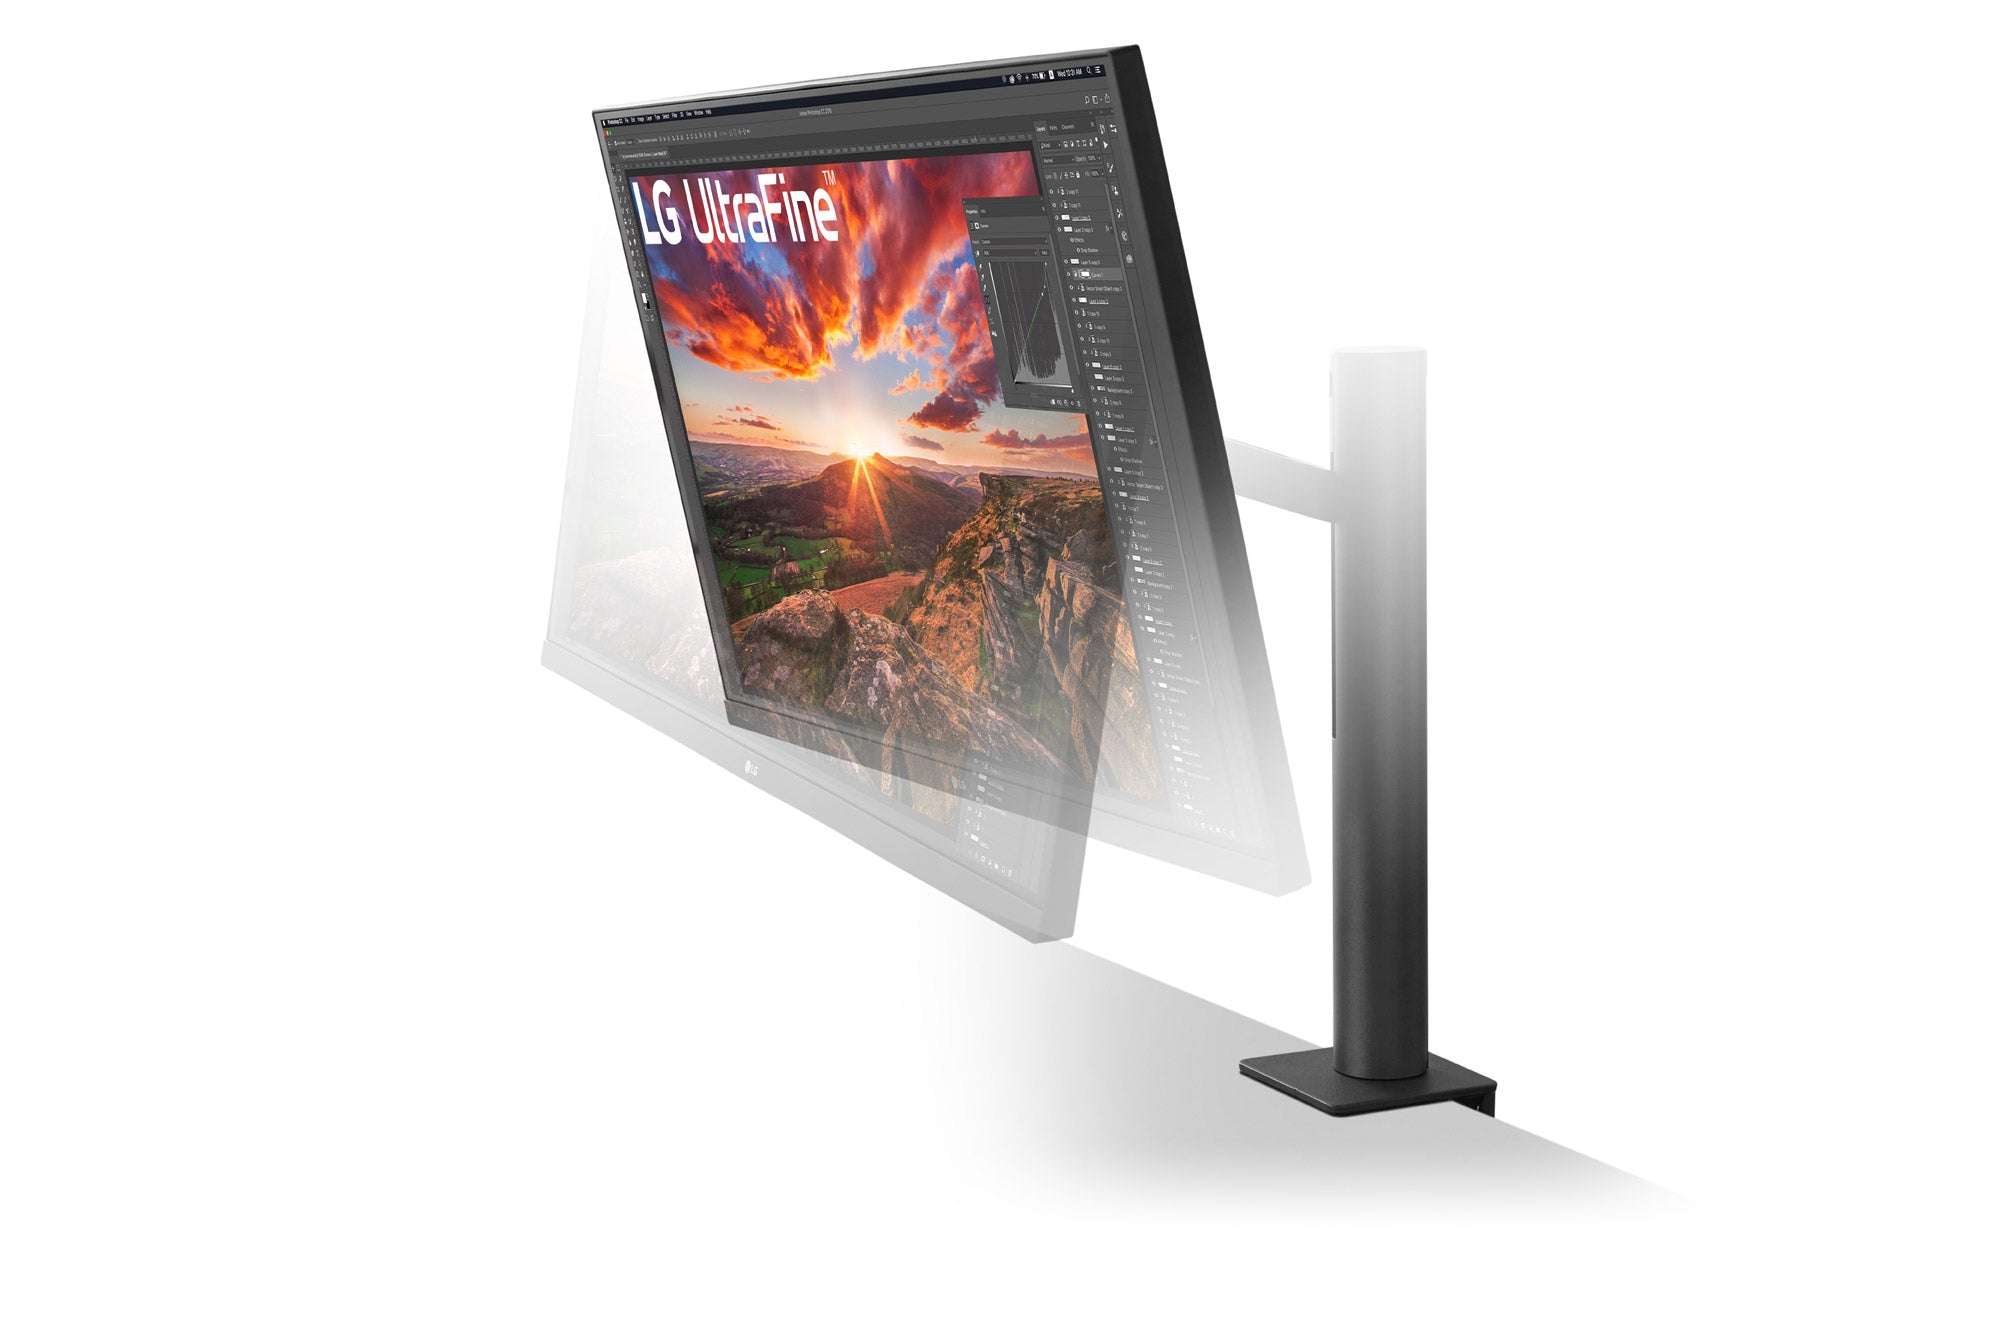 LG 32UN880 UltaHD Monitor / 32 inch / 3840 x 2160 Resolution / AMD FreeSync / Dynamic Action Sync / Black Stabilizer